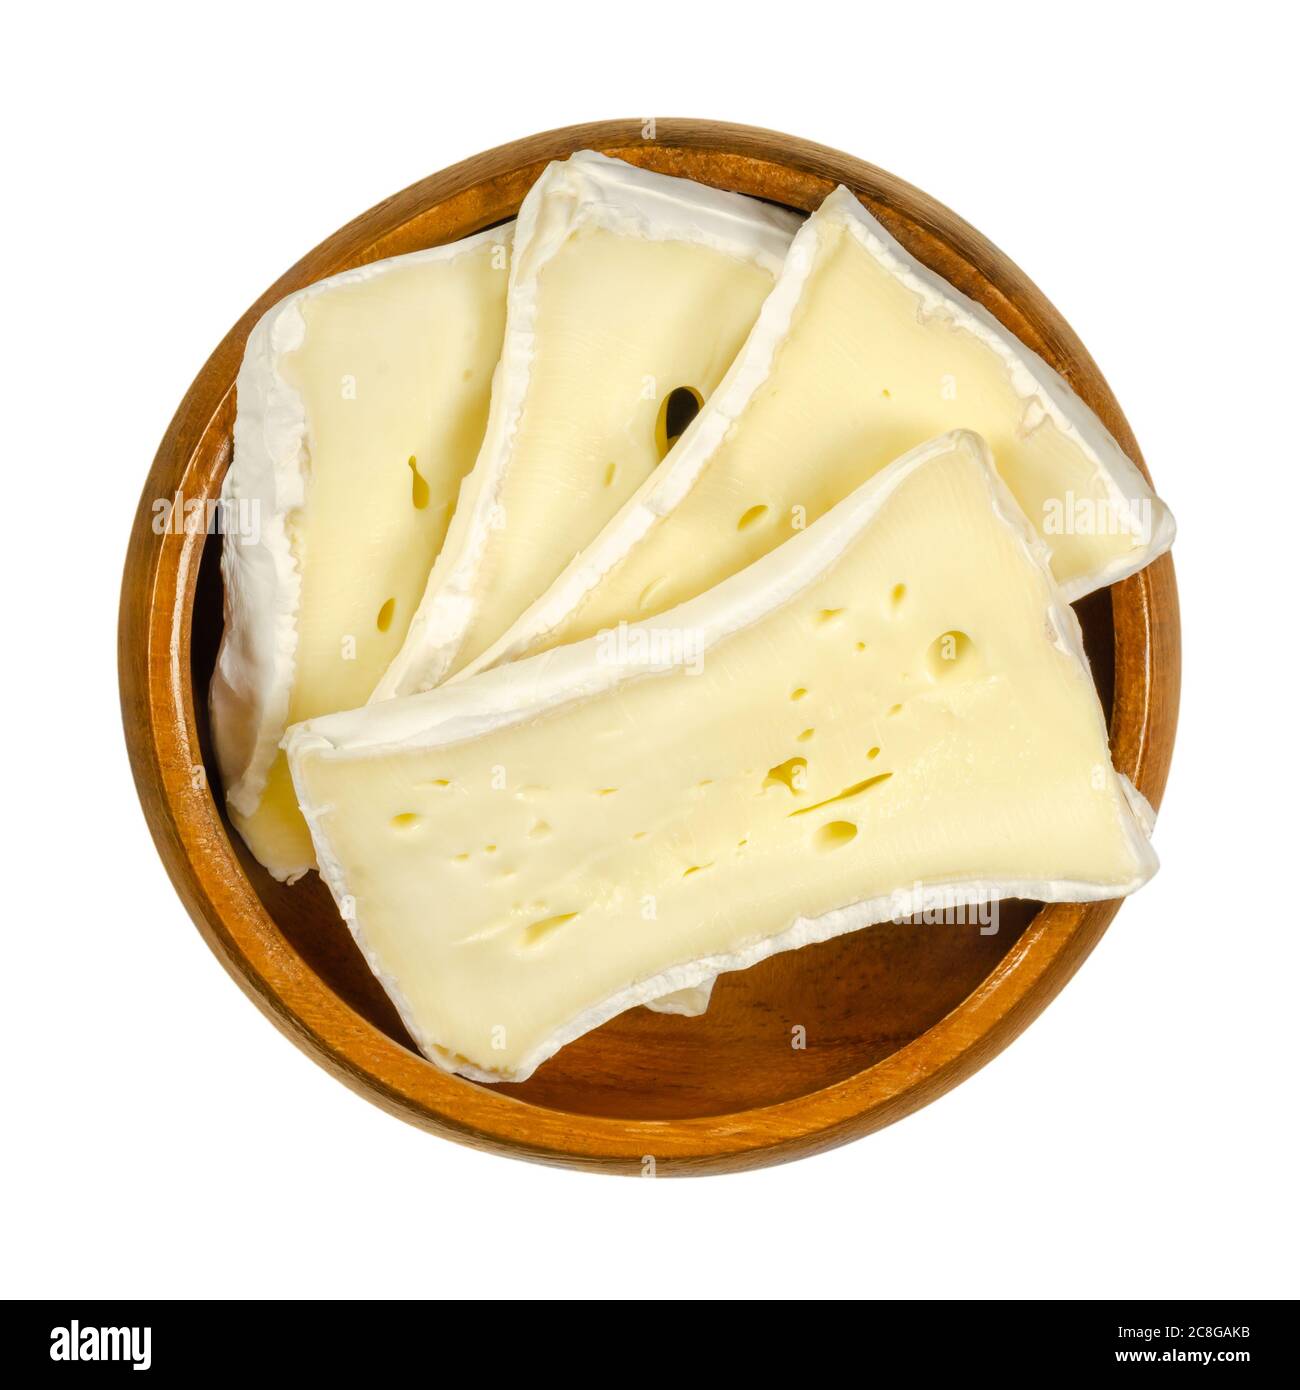 Scheiben von Weichschimmelkäse in Holzschüssel. Feuchter cremiger Käse aus Kuhmilch, gereift auf der Oberfläche mit einem speziellen Pilz. Camembert oder Brie. Stockfoto